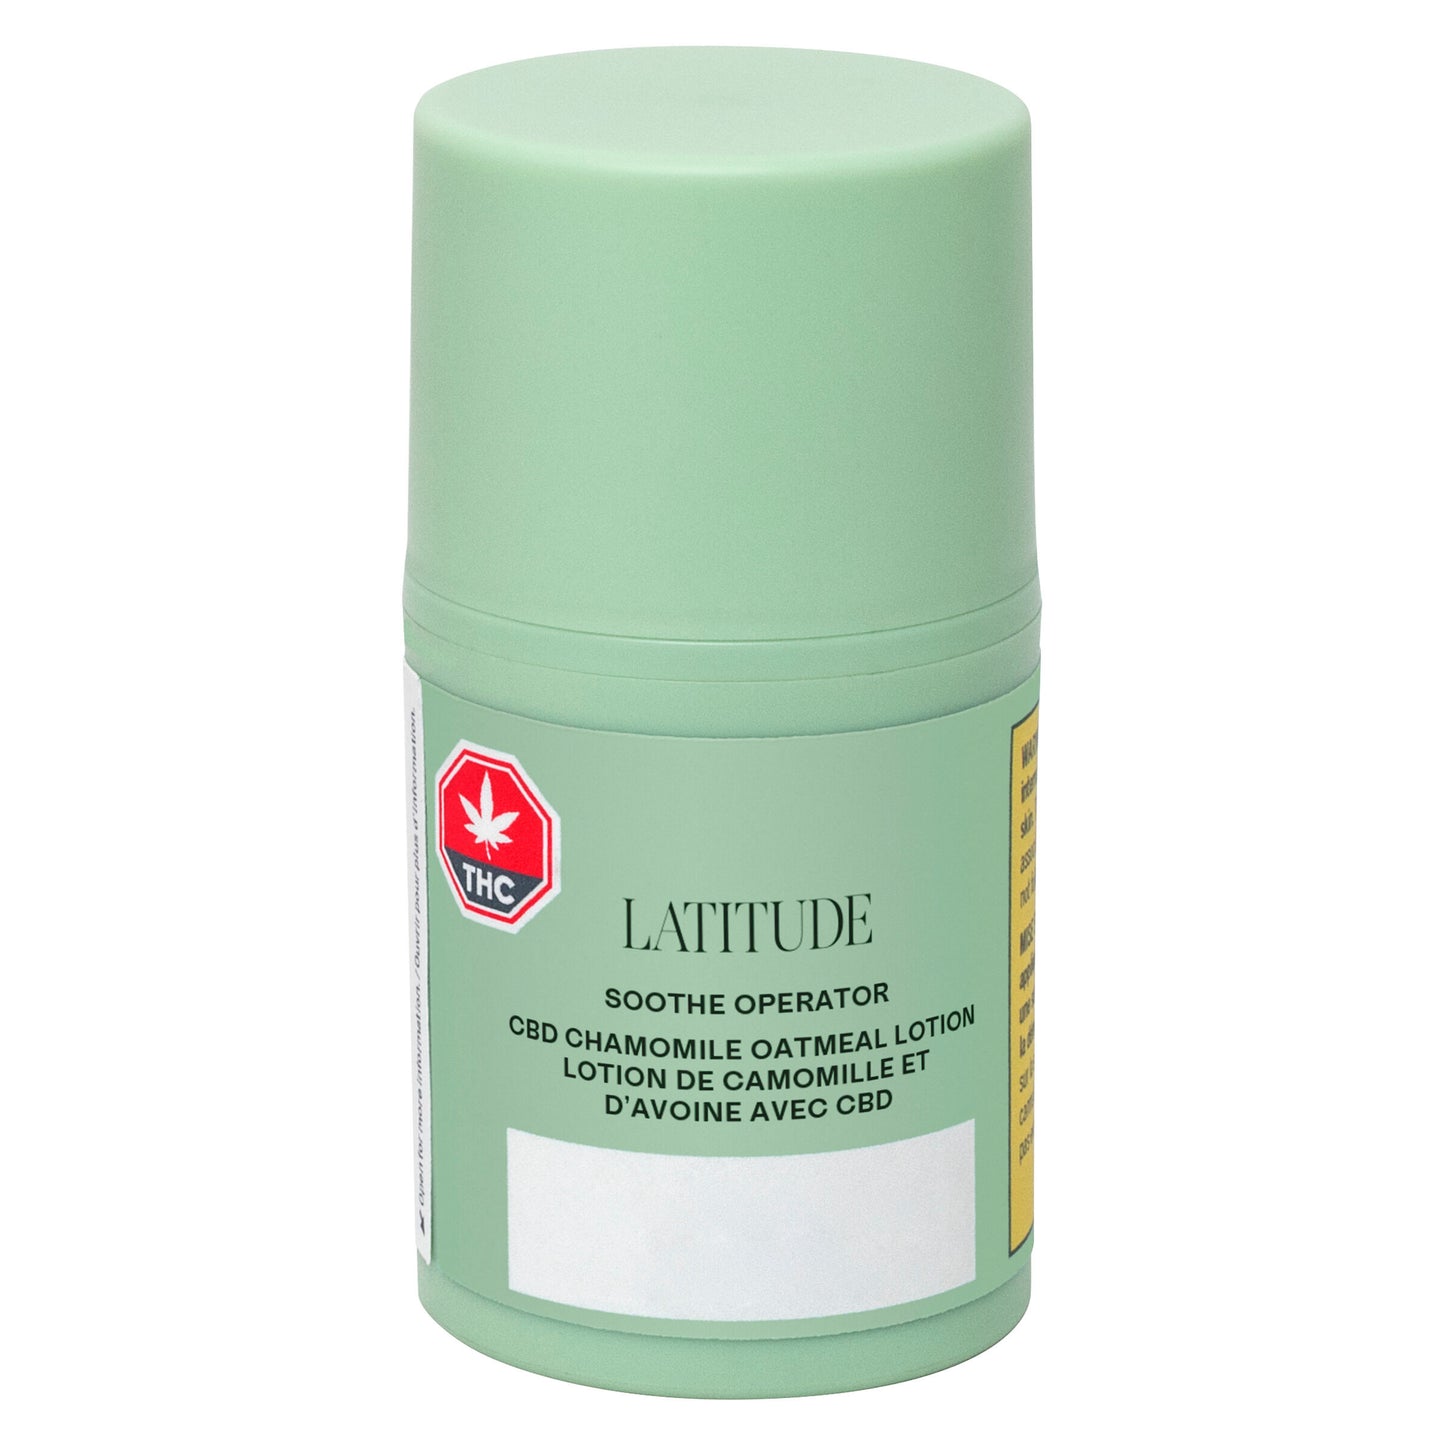 Latitude - Soothe Operator CBD Chamomile Oatmeal Lotion